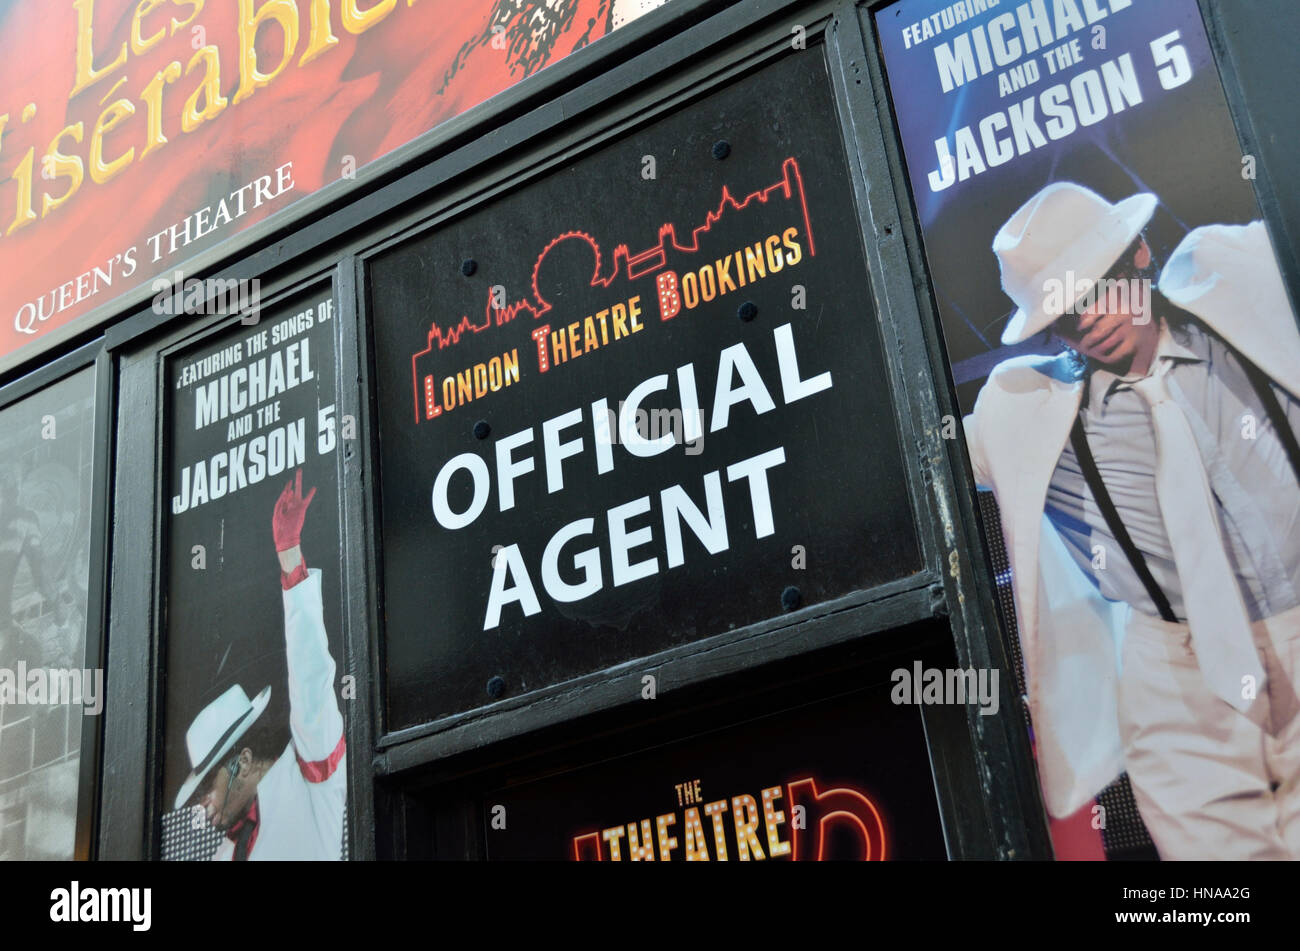 Agent officiel affiche à l'extérieur un billet de théâtre agent, Londres, Royaume-Uni. Banque D'Images